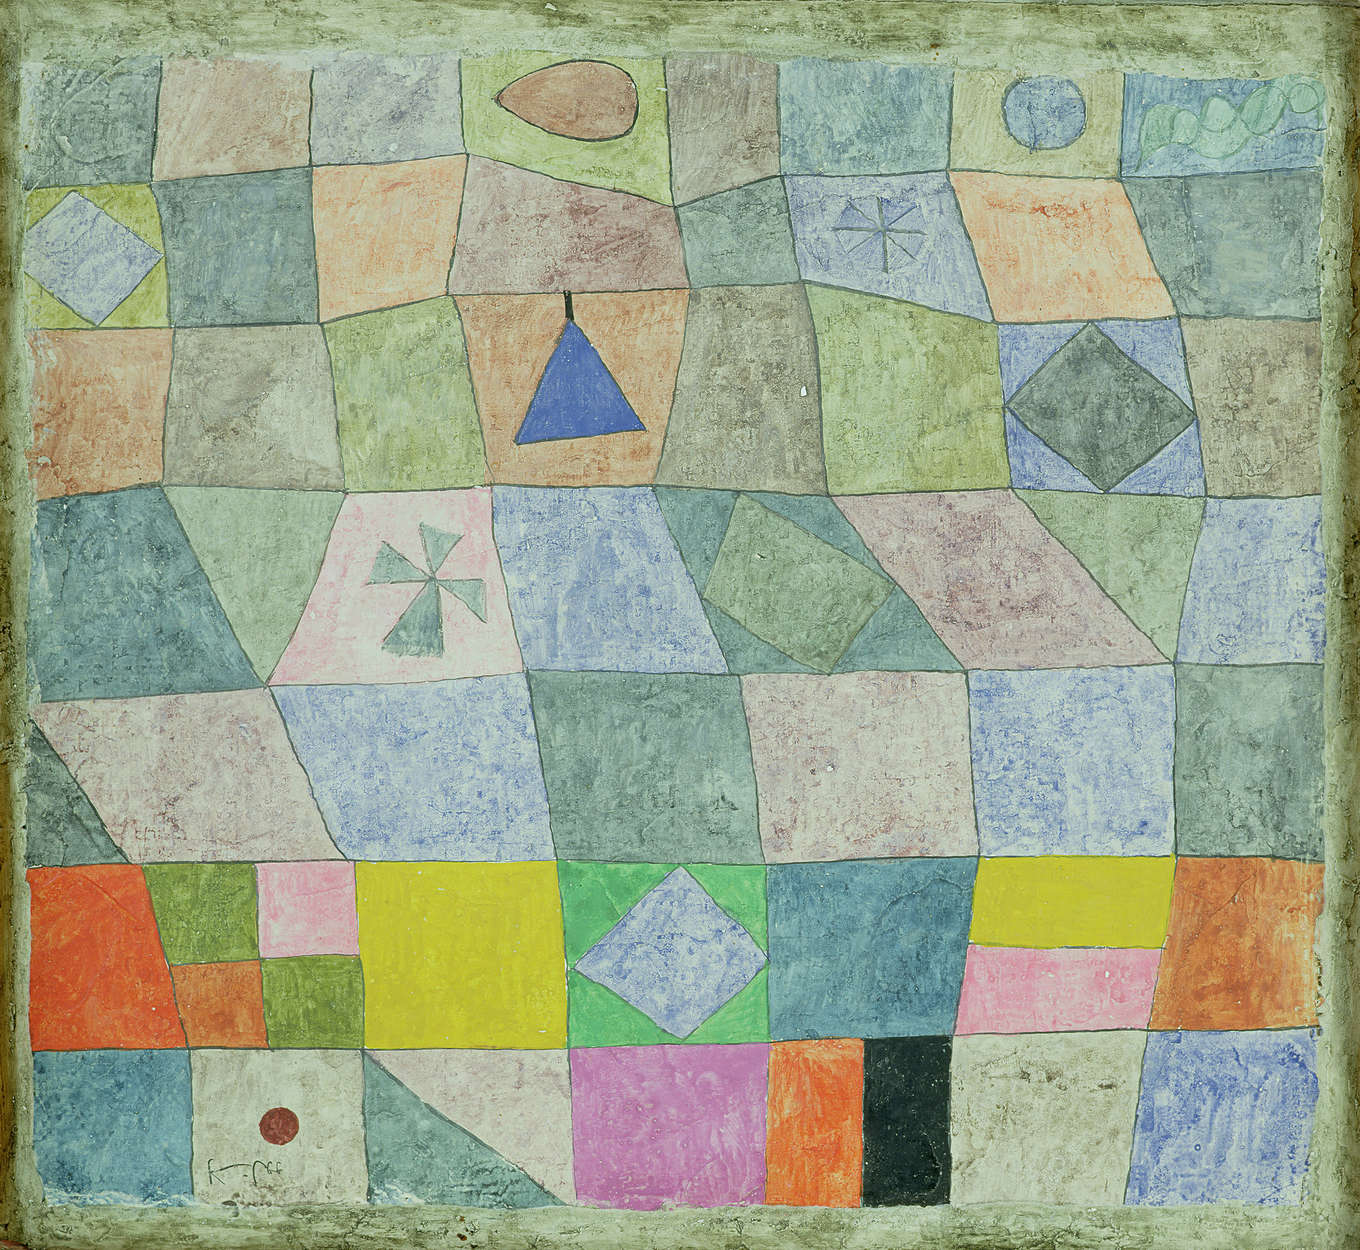             Fototapete "Freundliches Spiel" von Paul Klee
        